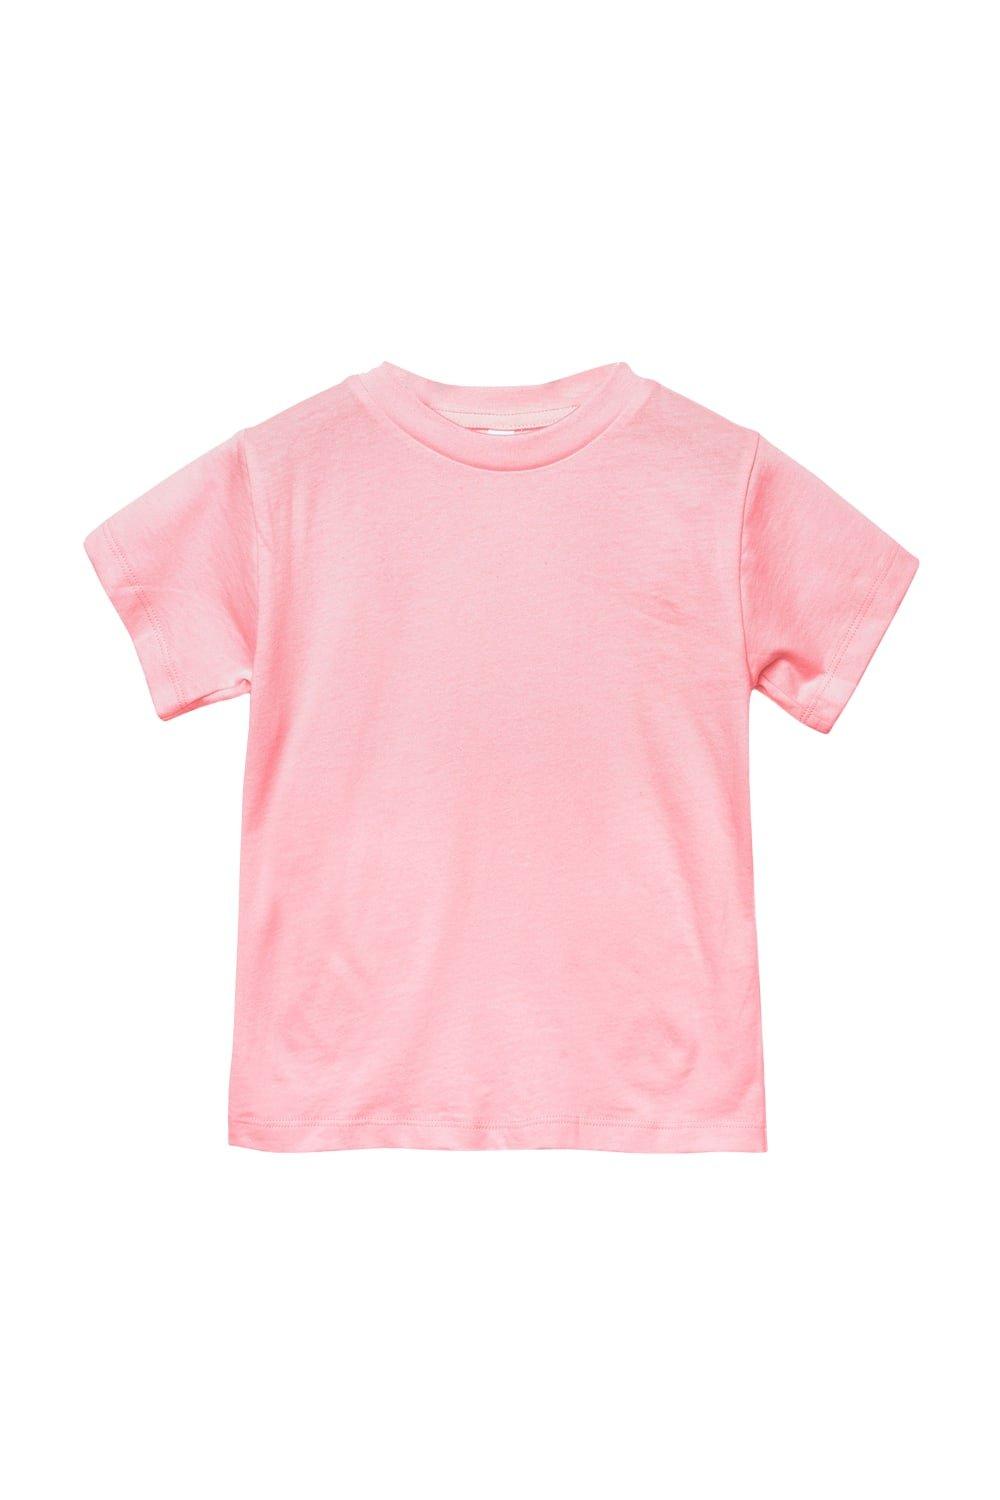 Футболка из джерси с коротким рукавом Bella + Canvas, розовый футболка из джерси с коротким рукавом bella canvas черный